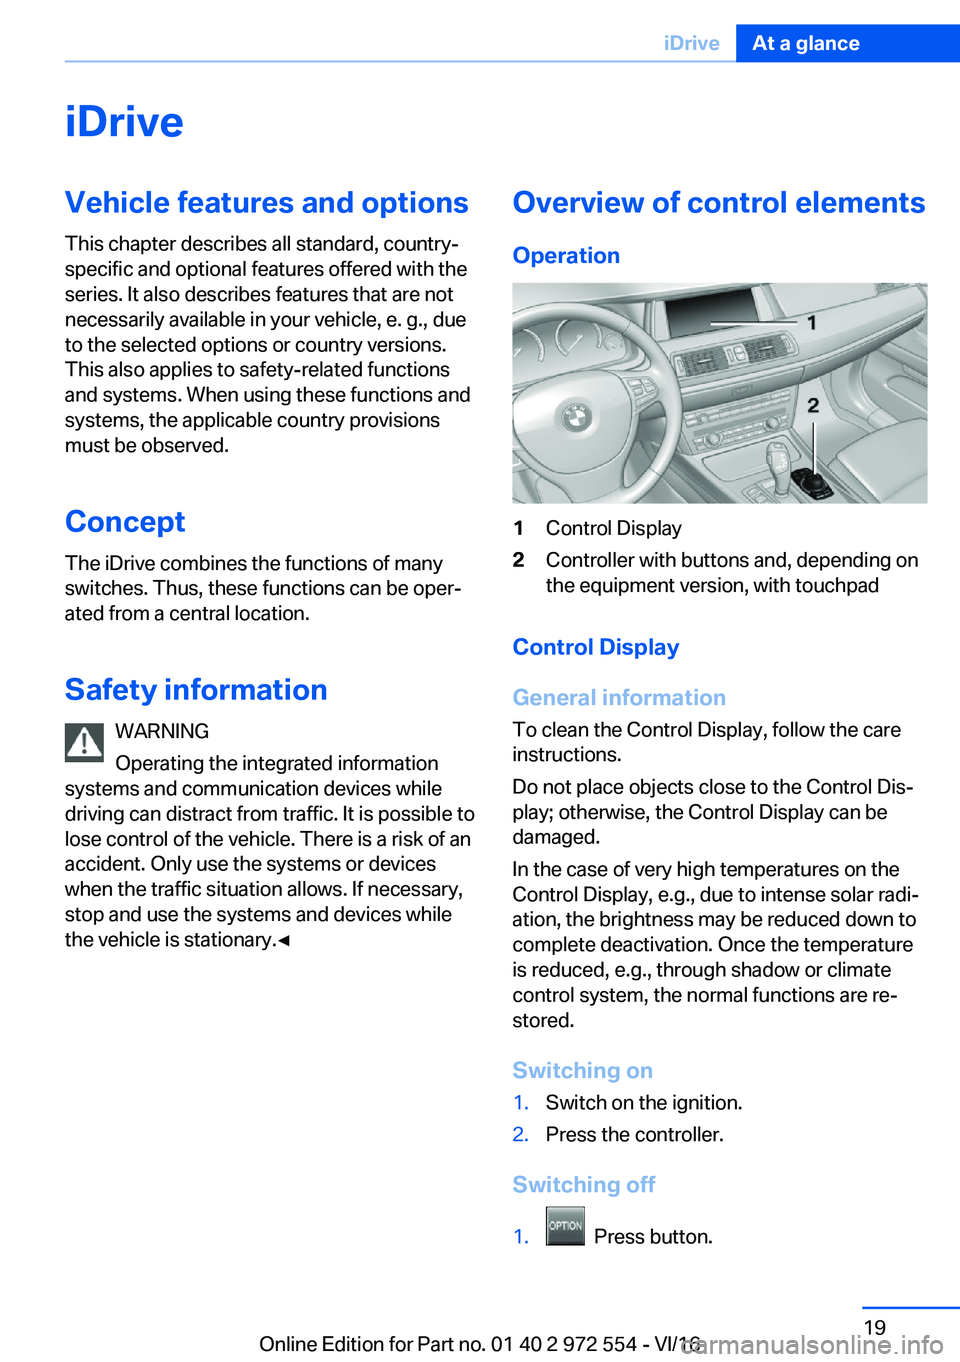 BMW 5 SERIES GRAN TURISMO 2017 User Guide �i�D�r�i�v�e�V�e�h�i�c�l�e��f�e�a�t�u�r�e�s��a�n�d��o�p�t�i�o�n�s
�T�h�i�s� �c�h�a�p�t�e�r� �d�e�s�c�r�i�b�e�s� �a�l�l� �s�t�a�n�d�a�r�d�,� �c�o�u�n�t�r�y�- �s�p�e�c�i�f�i�c� �a�n�d� �o�p�t�i�o�n�a